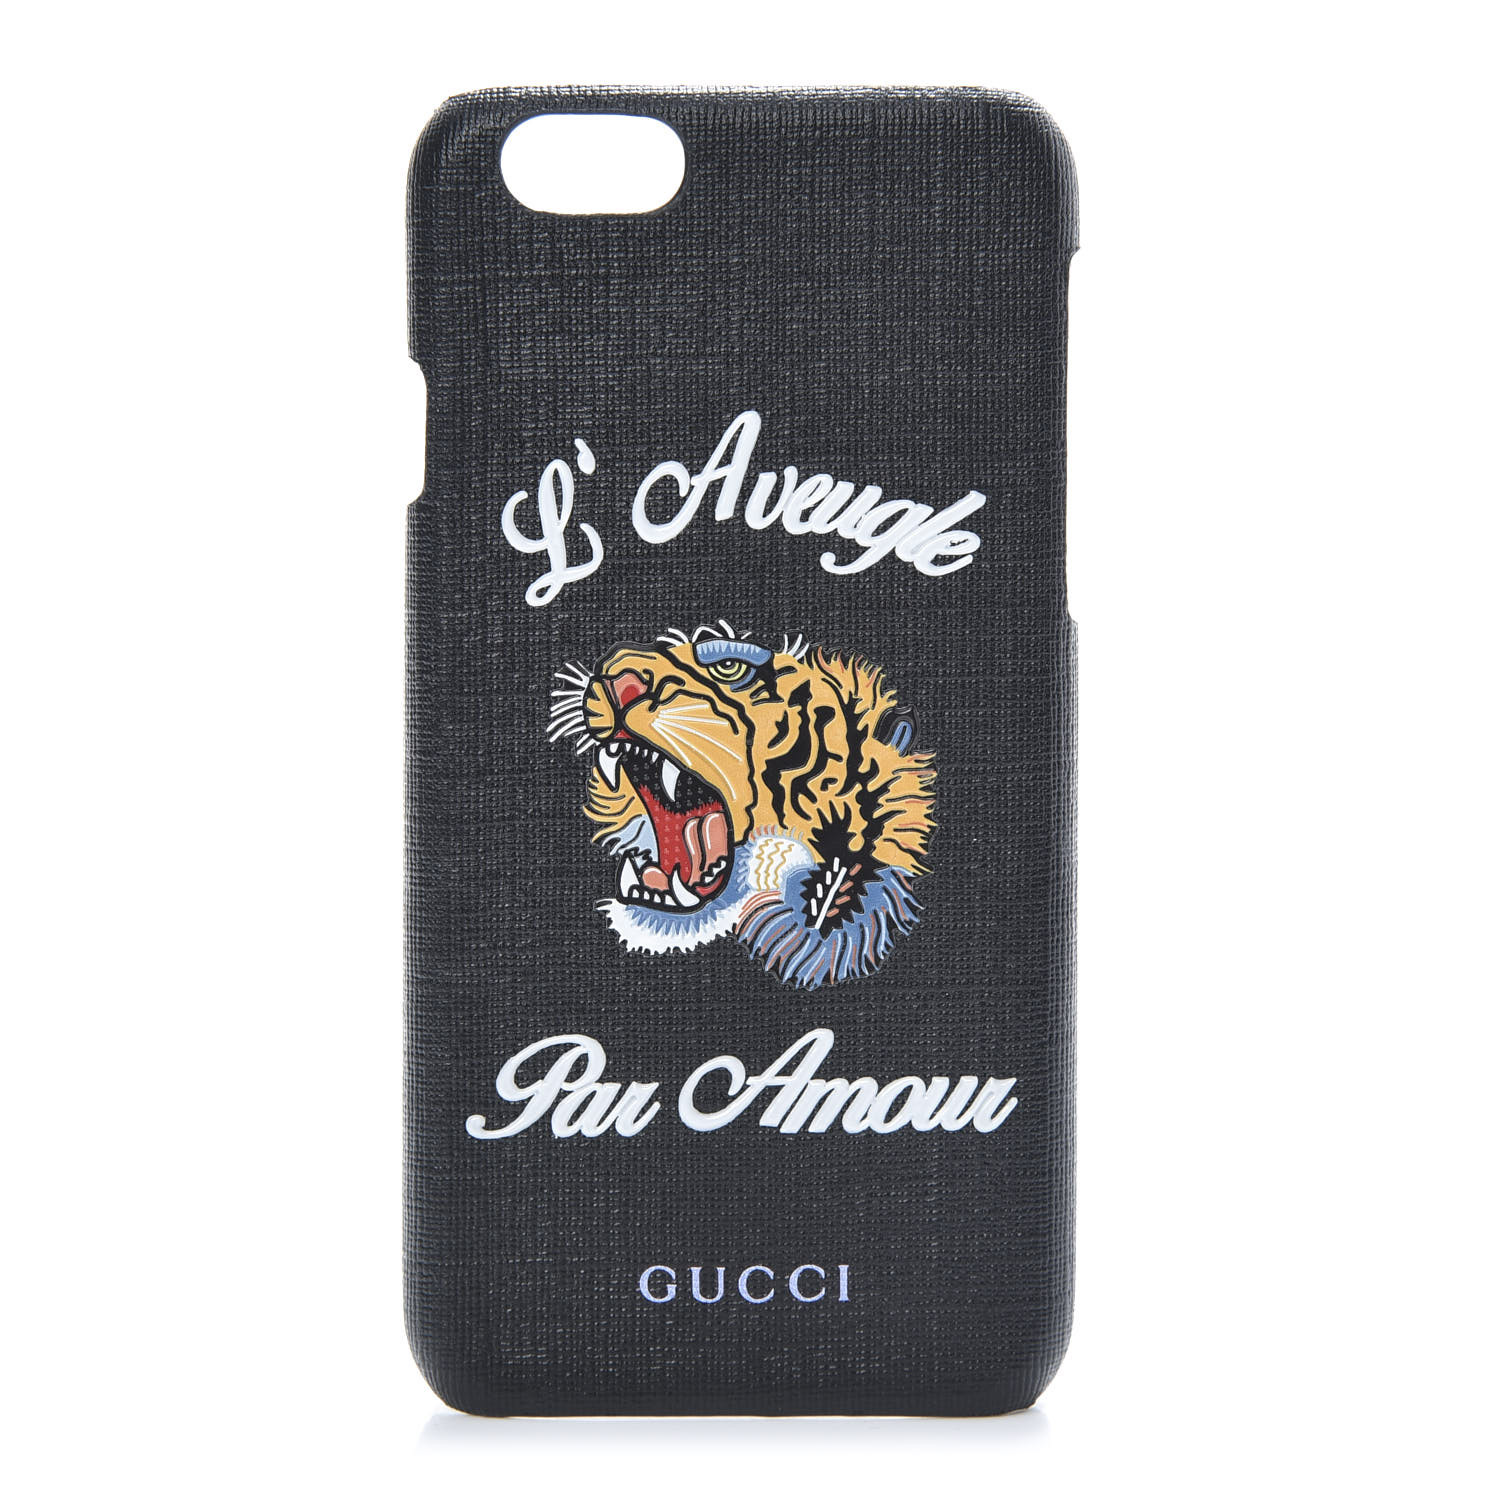 Gucci Gg Supreme Monogram Tiger Print Iphone 7 Case Black Fashionphile